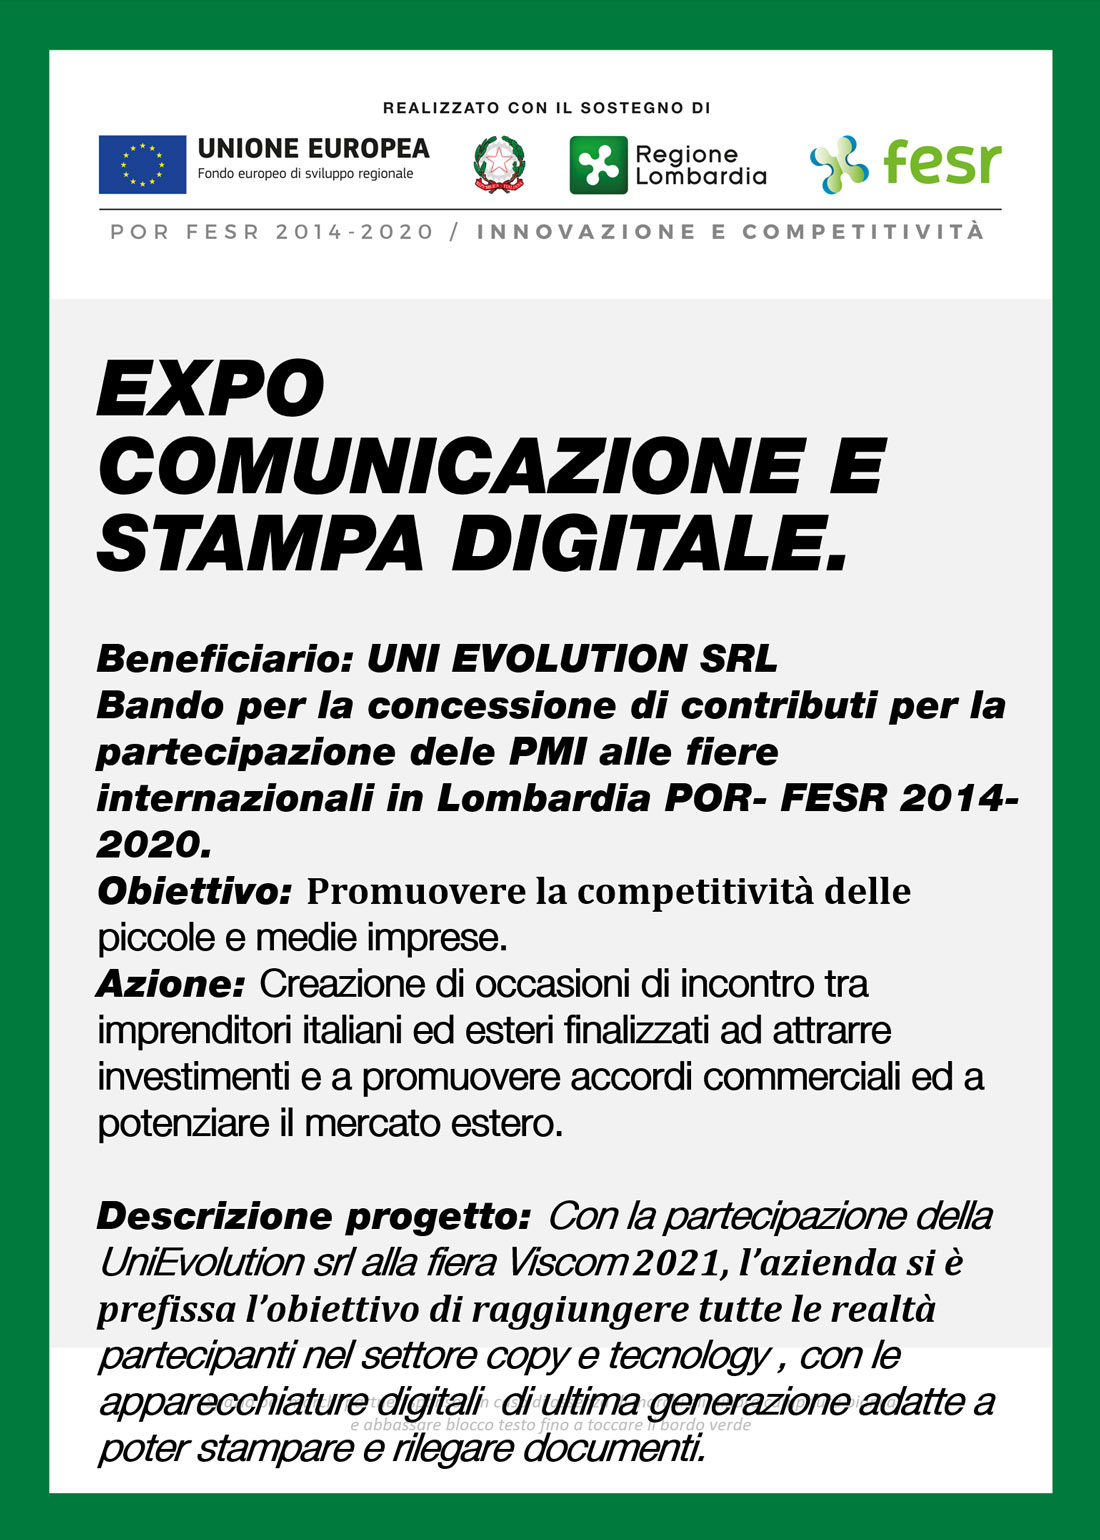 EXPO COMUNICAZIONE E STAMPA DIGITALE